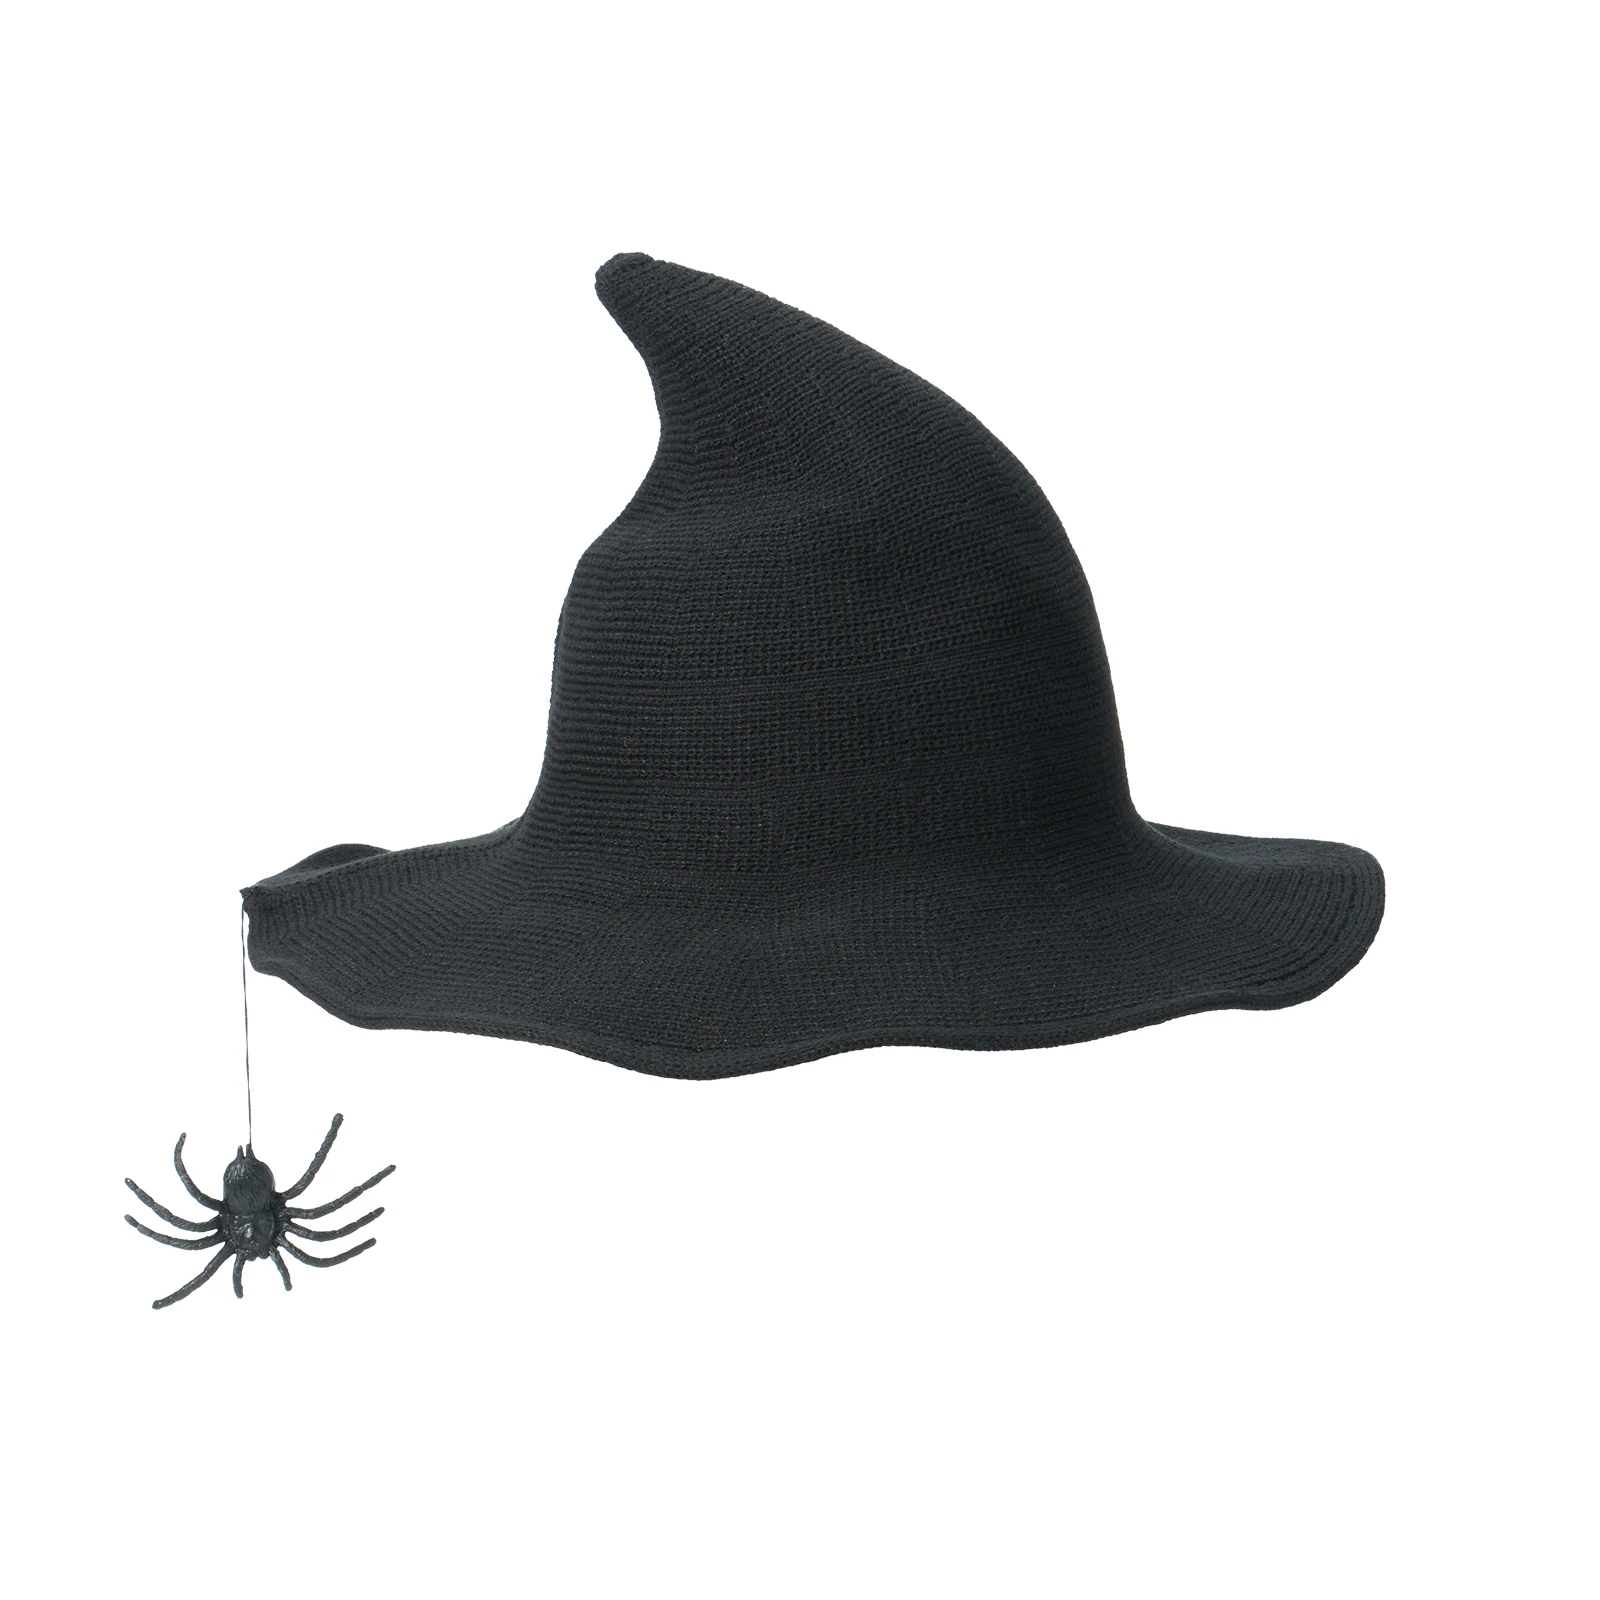 

Головная повязка на голову с черными кошачьими ушками для Хэллоуина, аксессуар для женского, мужского, детского костюма, аксессуар для костюмированной вечеринки